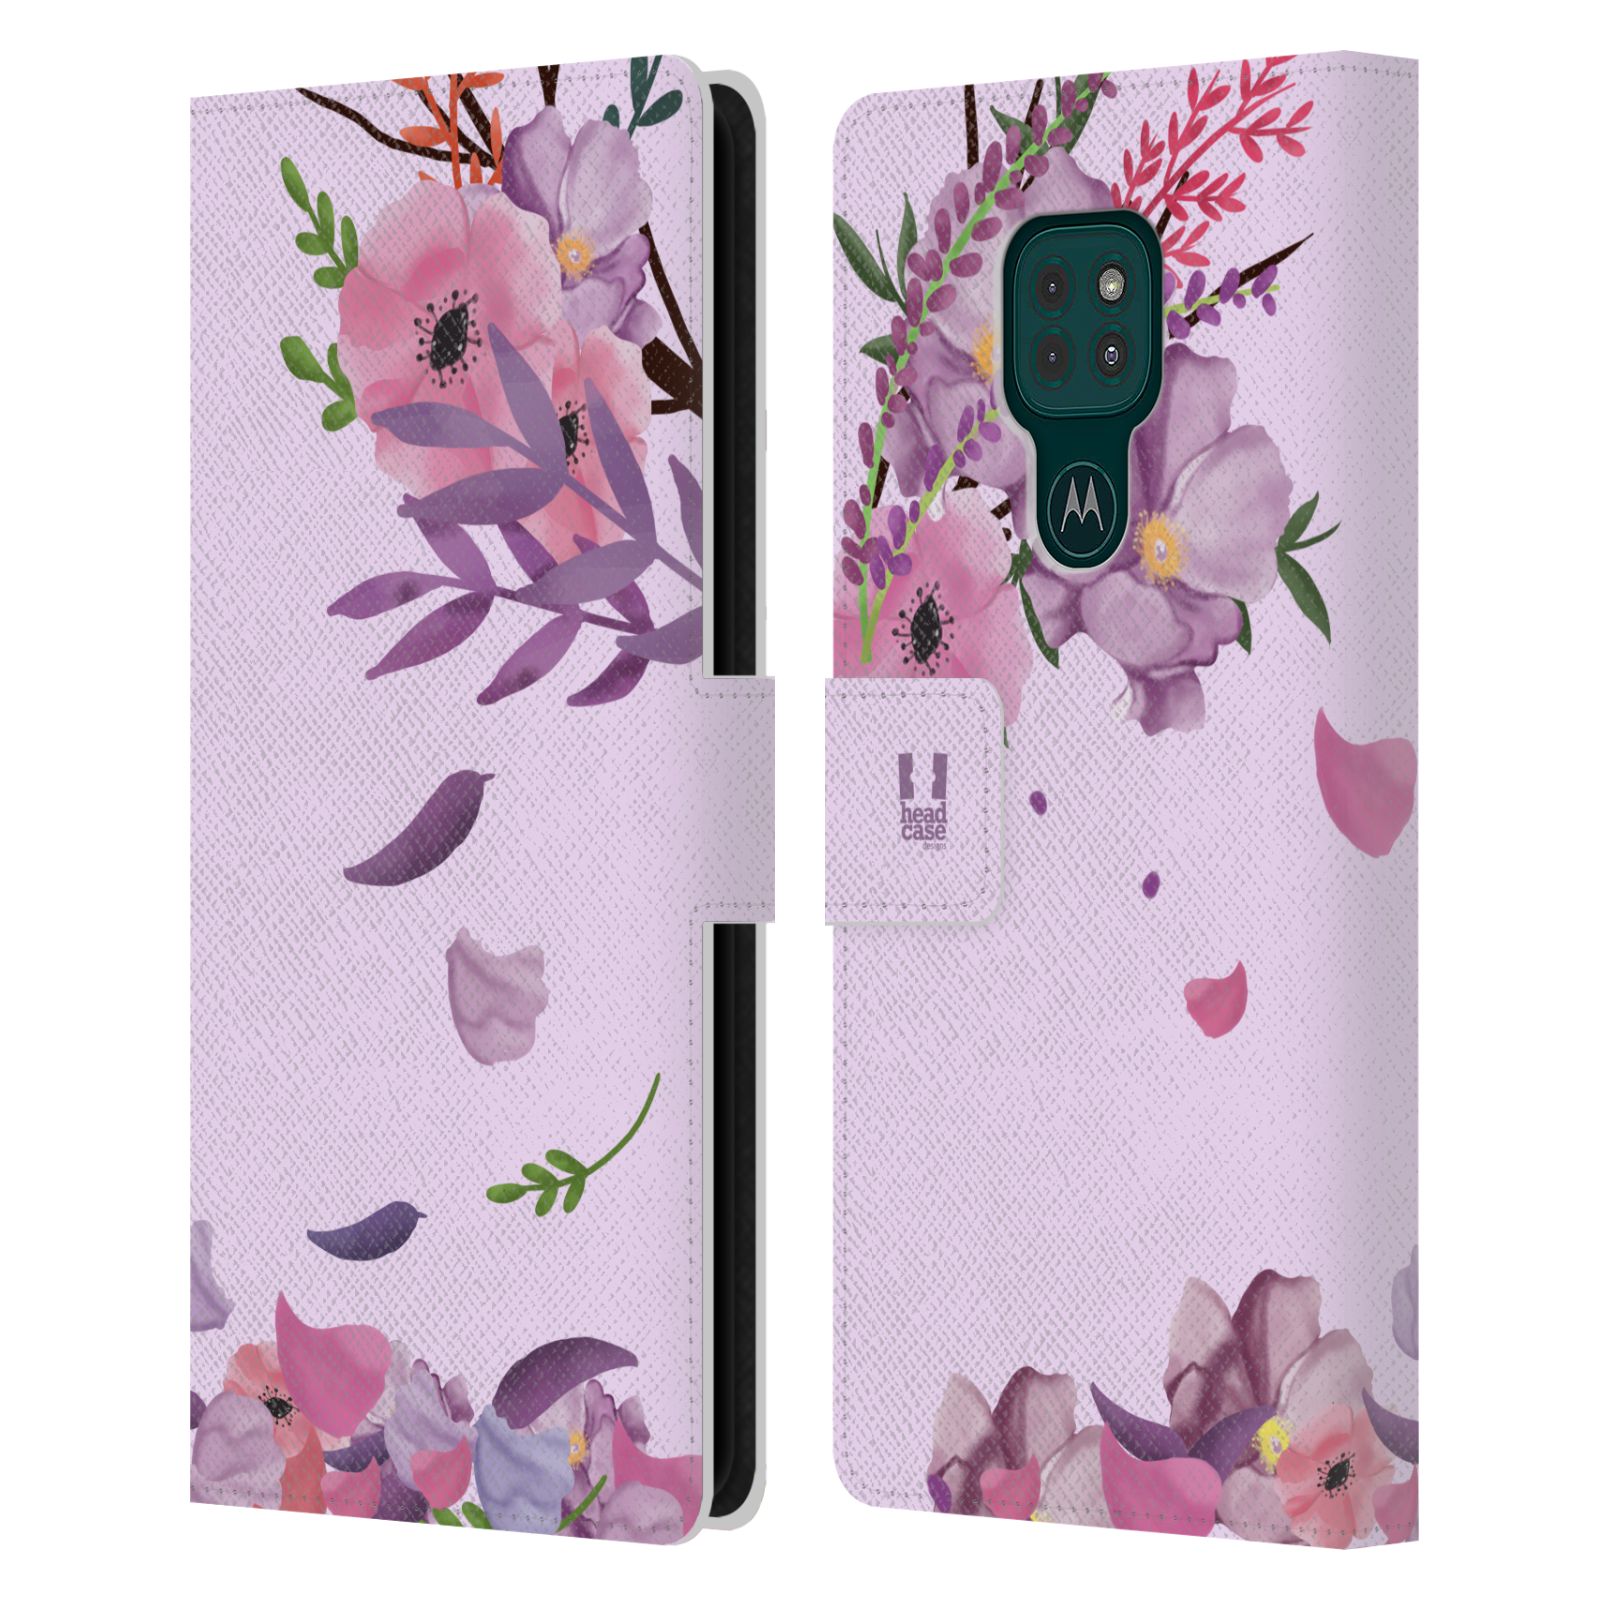 Pouzdro na mobil Motorola Moto G9 PLAY - HEAD CASE - Rozkvetlé růže a listy růžová